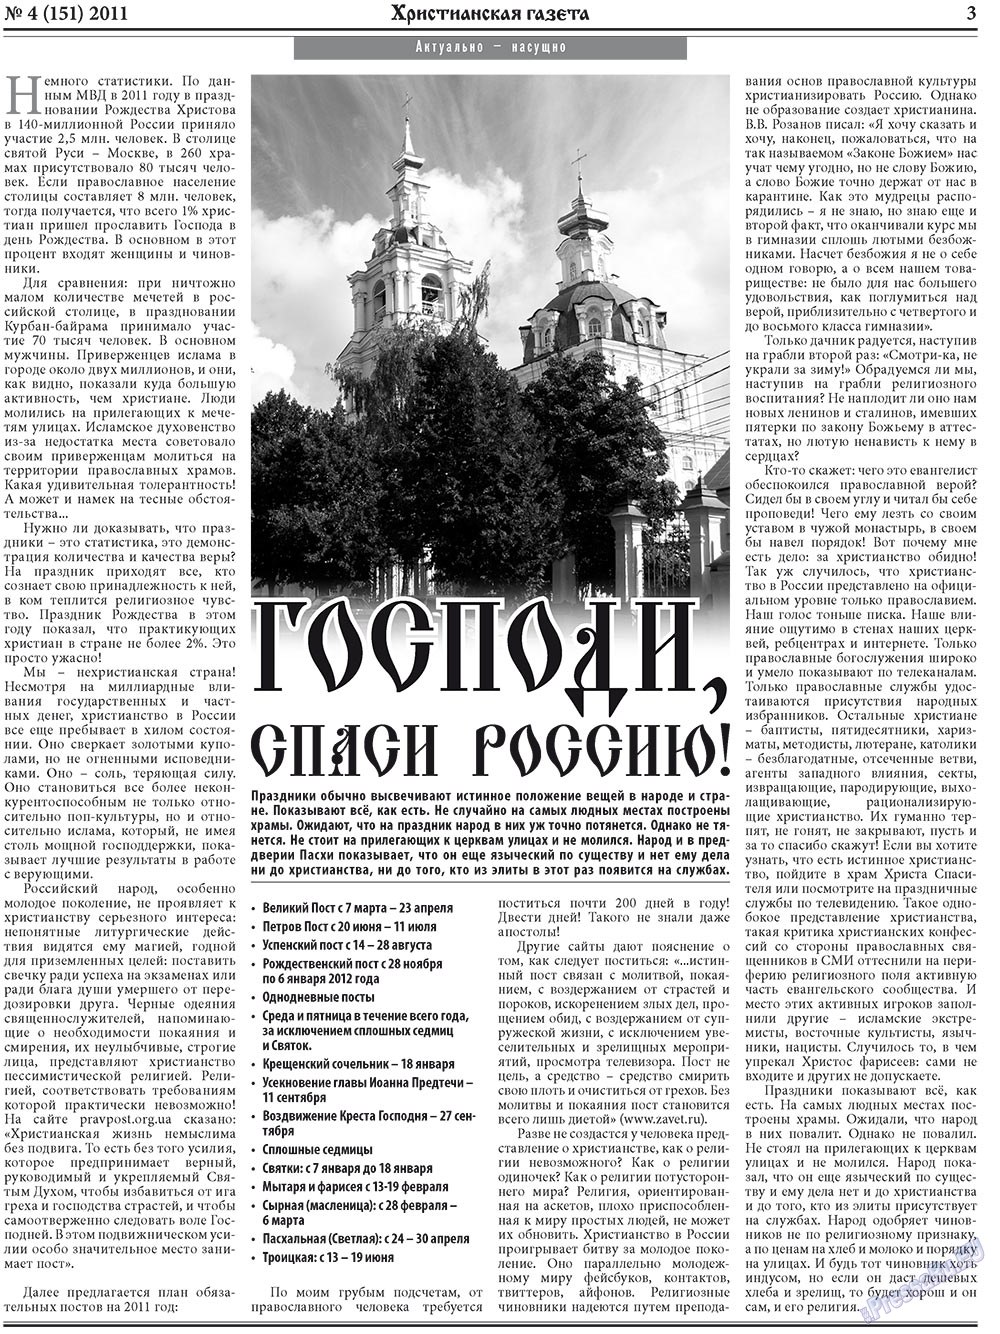 Христианская газета, газета. 2011 №4 стр.3